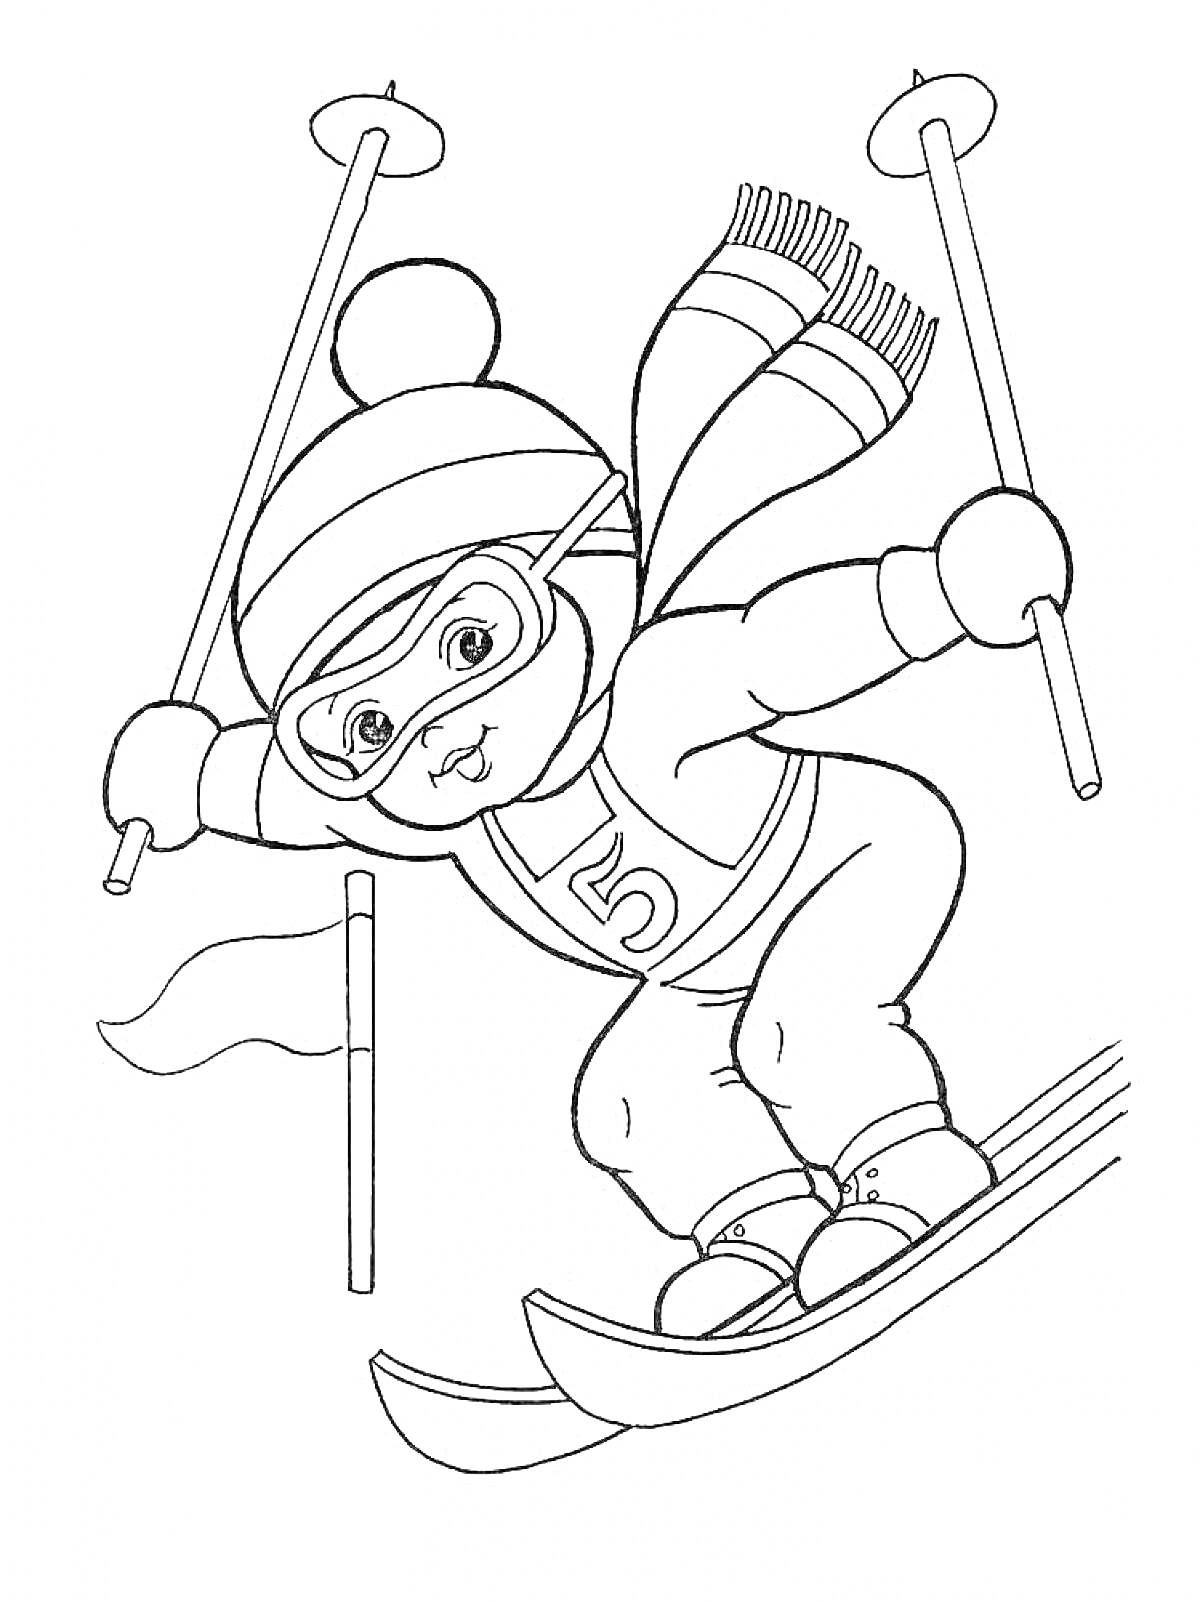 Раскраска Ребенок на лыжах в шапке и шарфе с лыжными палками и номеровым значком